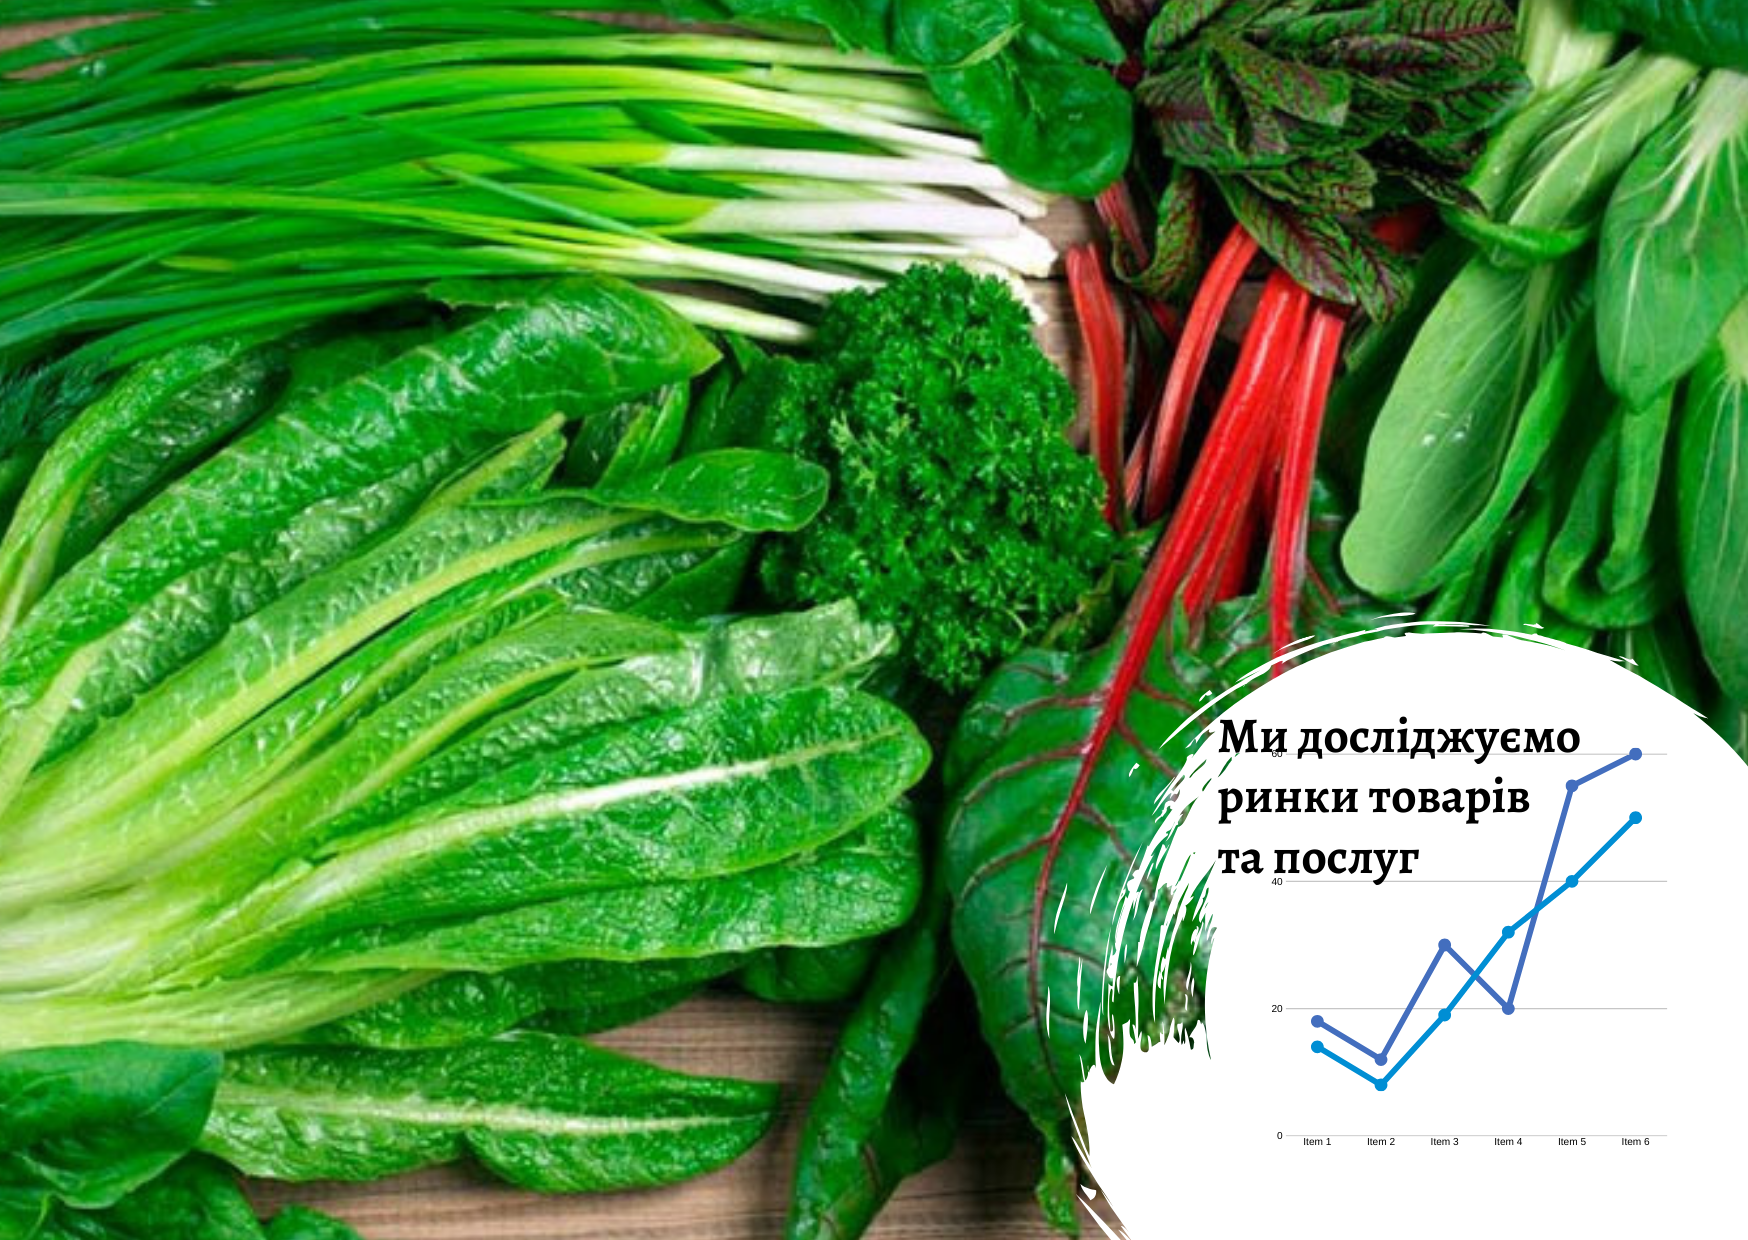 Ринок зелені в Україні: споживчі вподобання